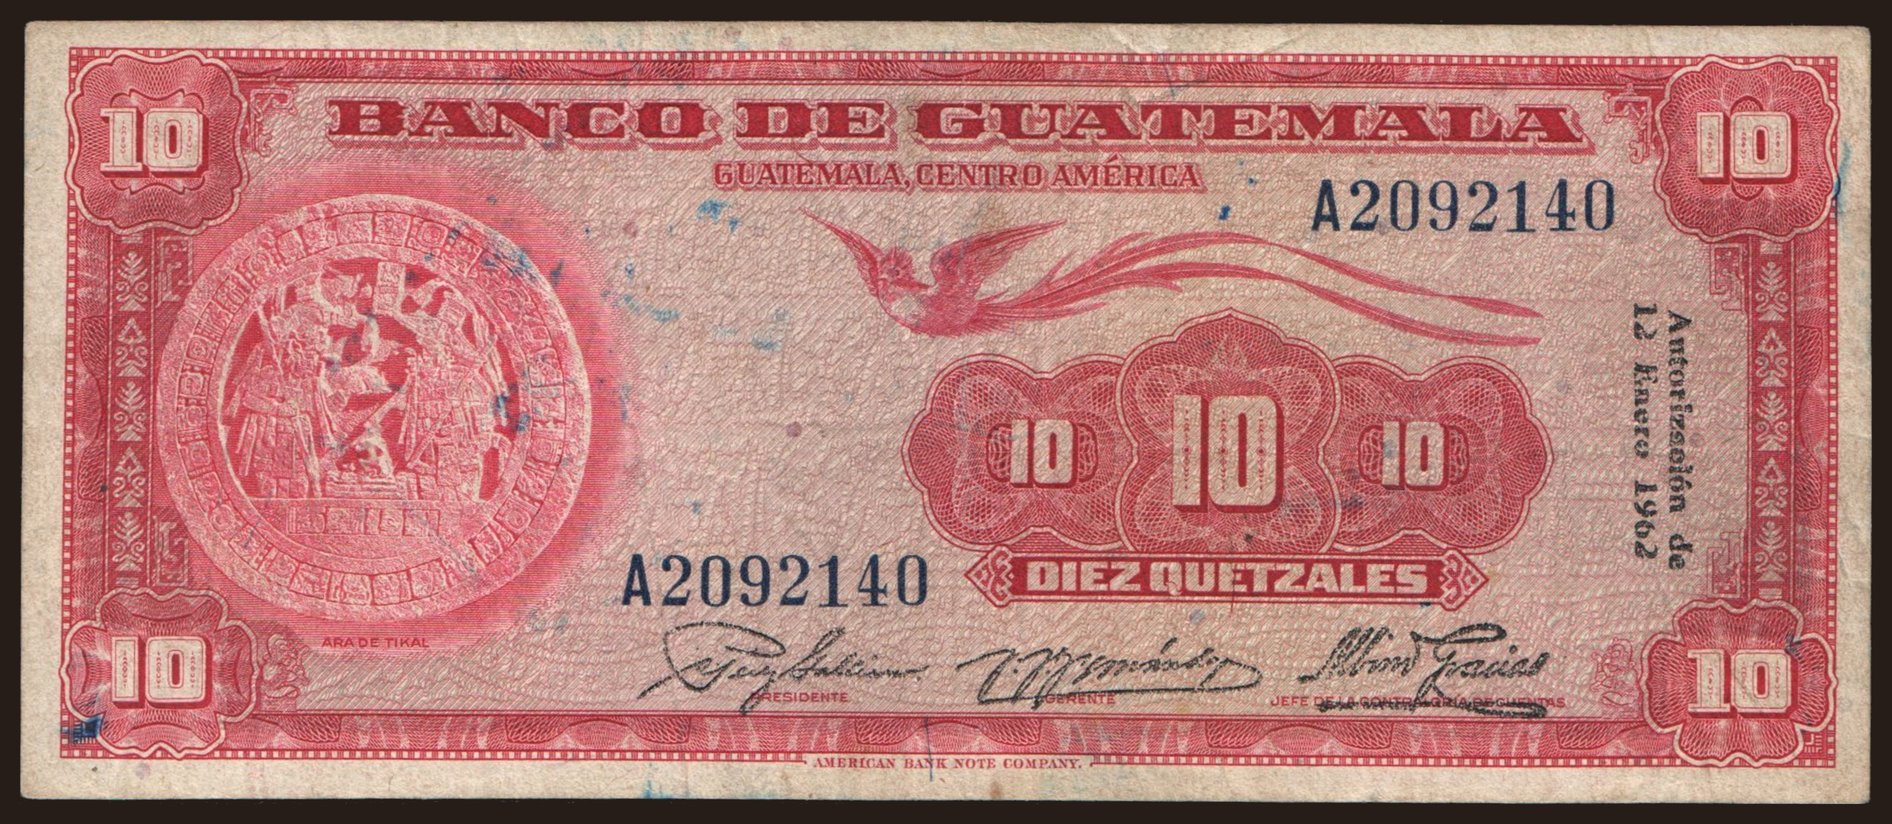 10 quetzales, 1962